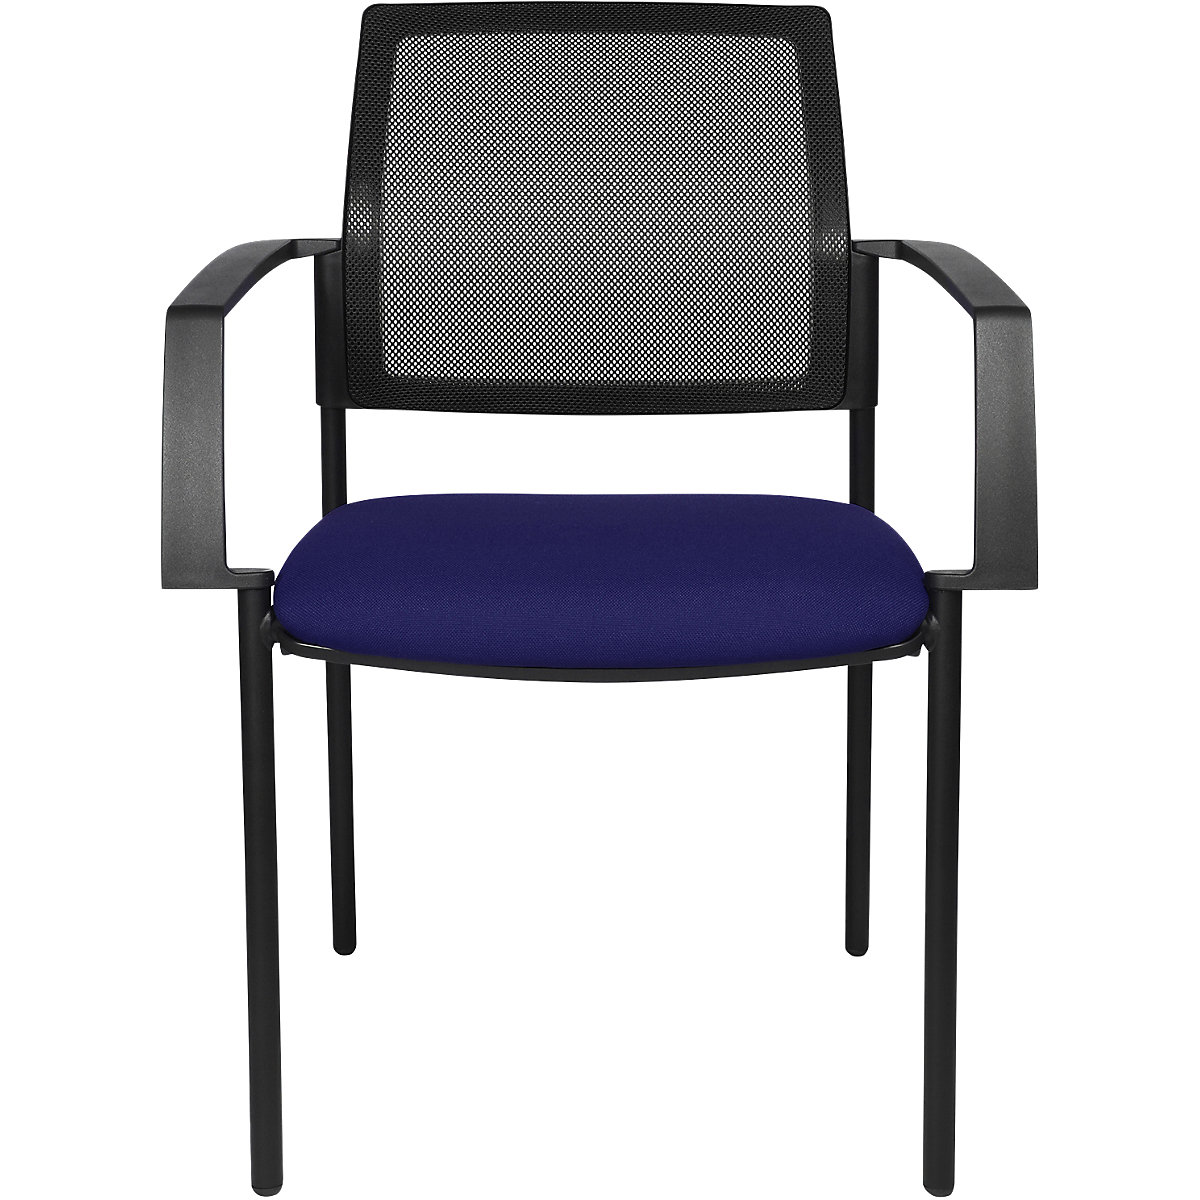 Stohovacia stolička zo sieťoviny - Topstar